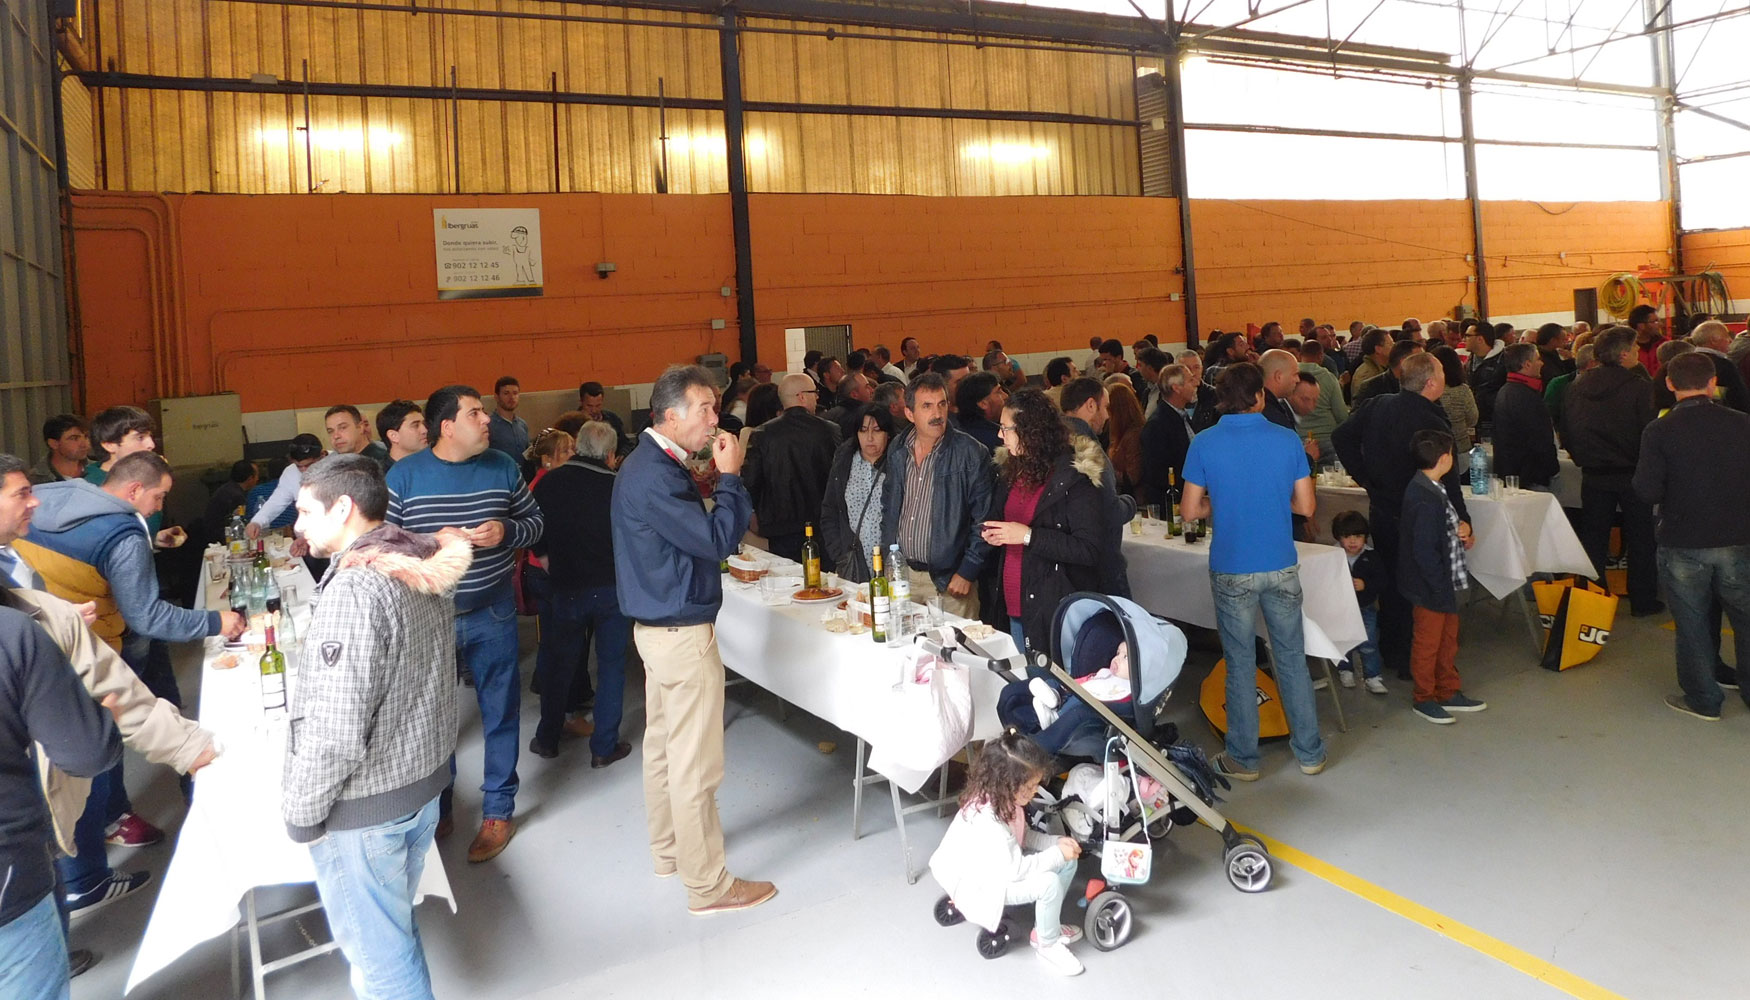 Para finalizar la jornada, Ibergras-JCB organiz una comida para todos los asistentes con productos tpicos de la tierra...